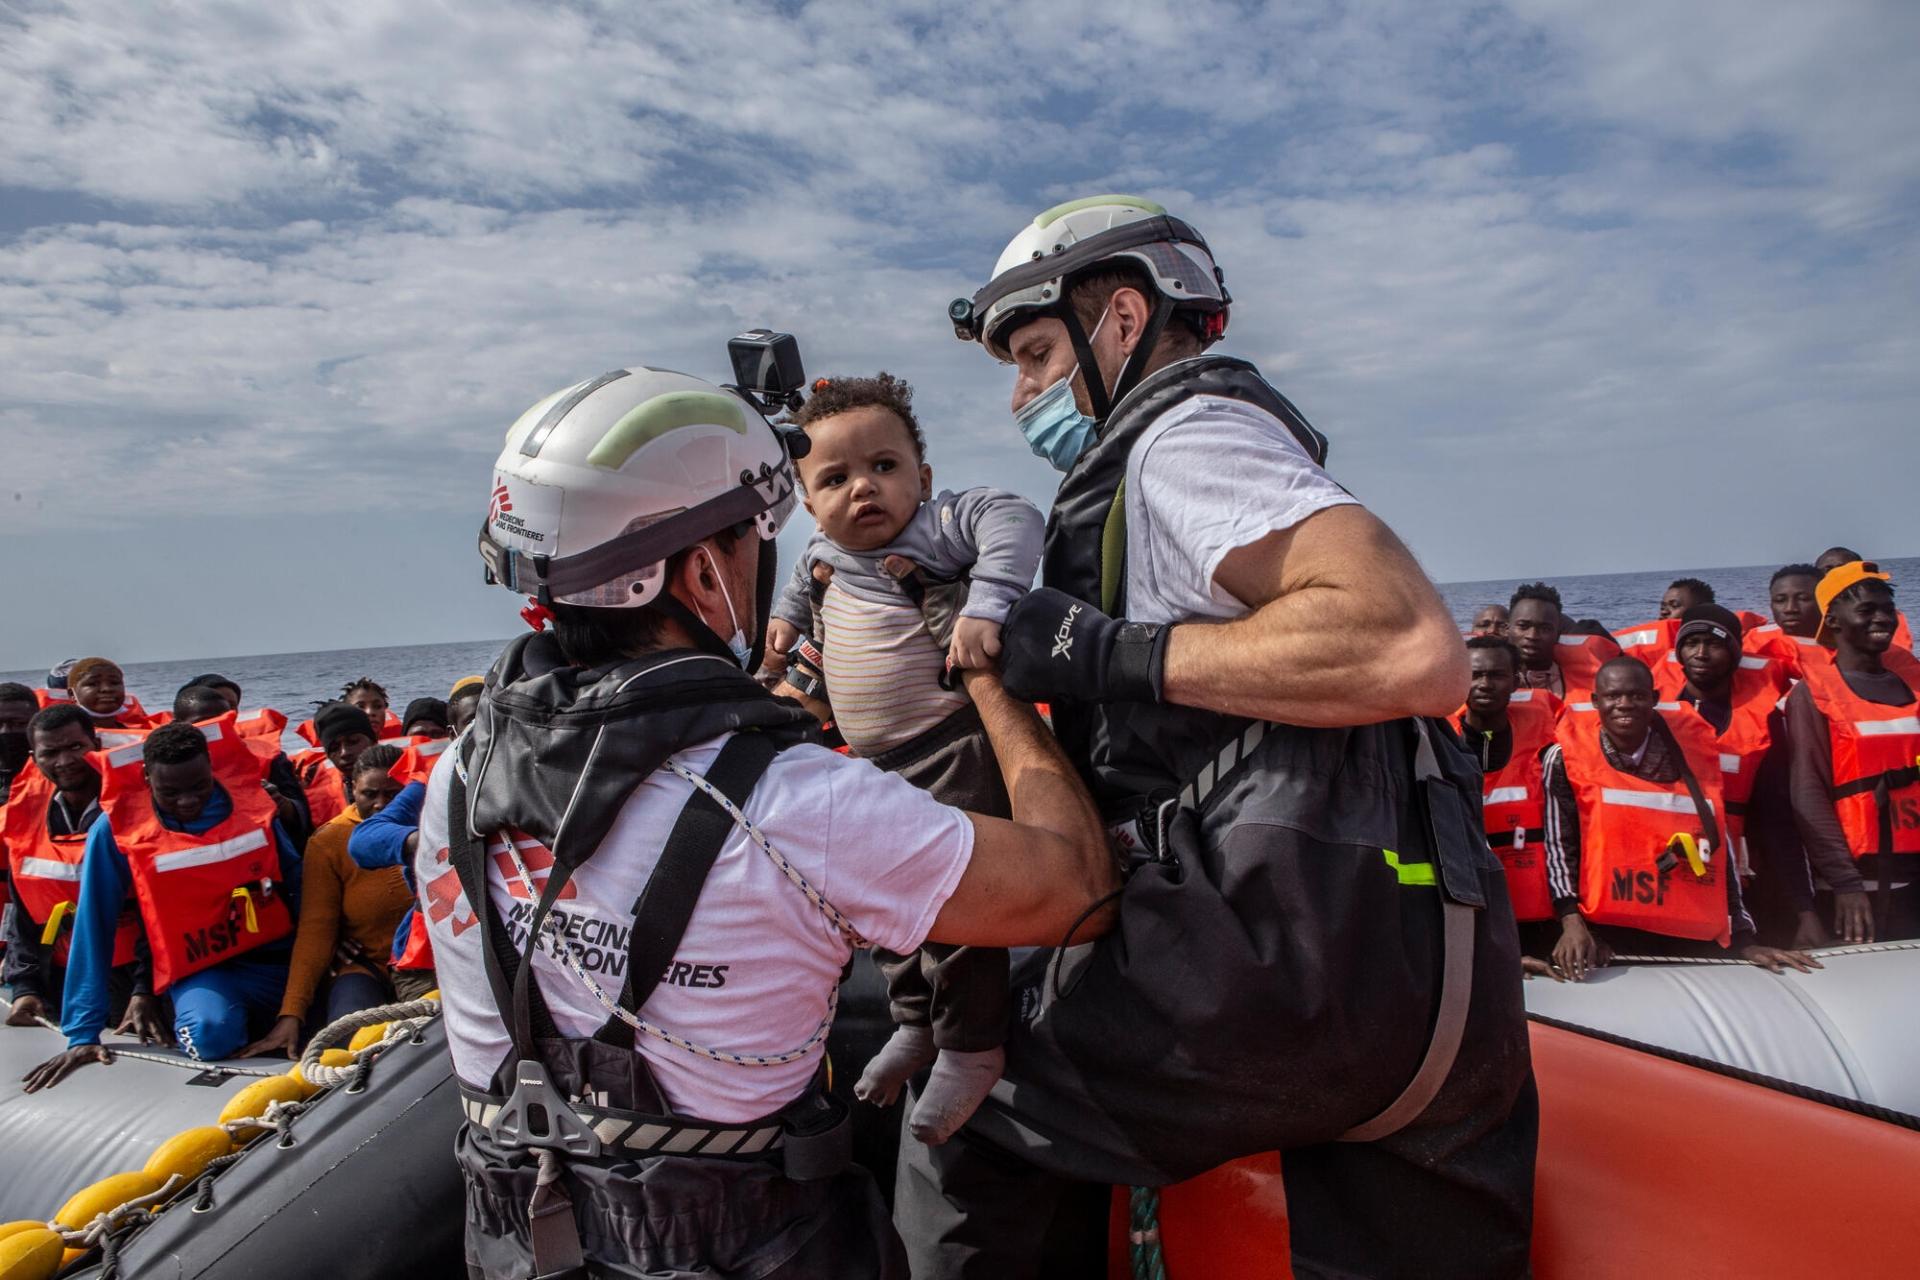 Dans la matinée du 9 mai 2022, près de 200 personnes ont été secourues par les équipes du Geo Barents, le navire de recherche et de sauvetage de MSF en mer Méditerranée. Mer Méditerranée, mai 2022